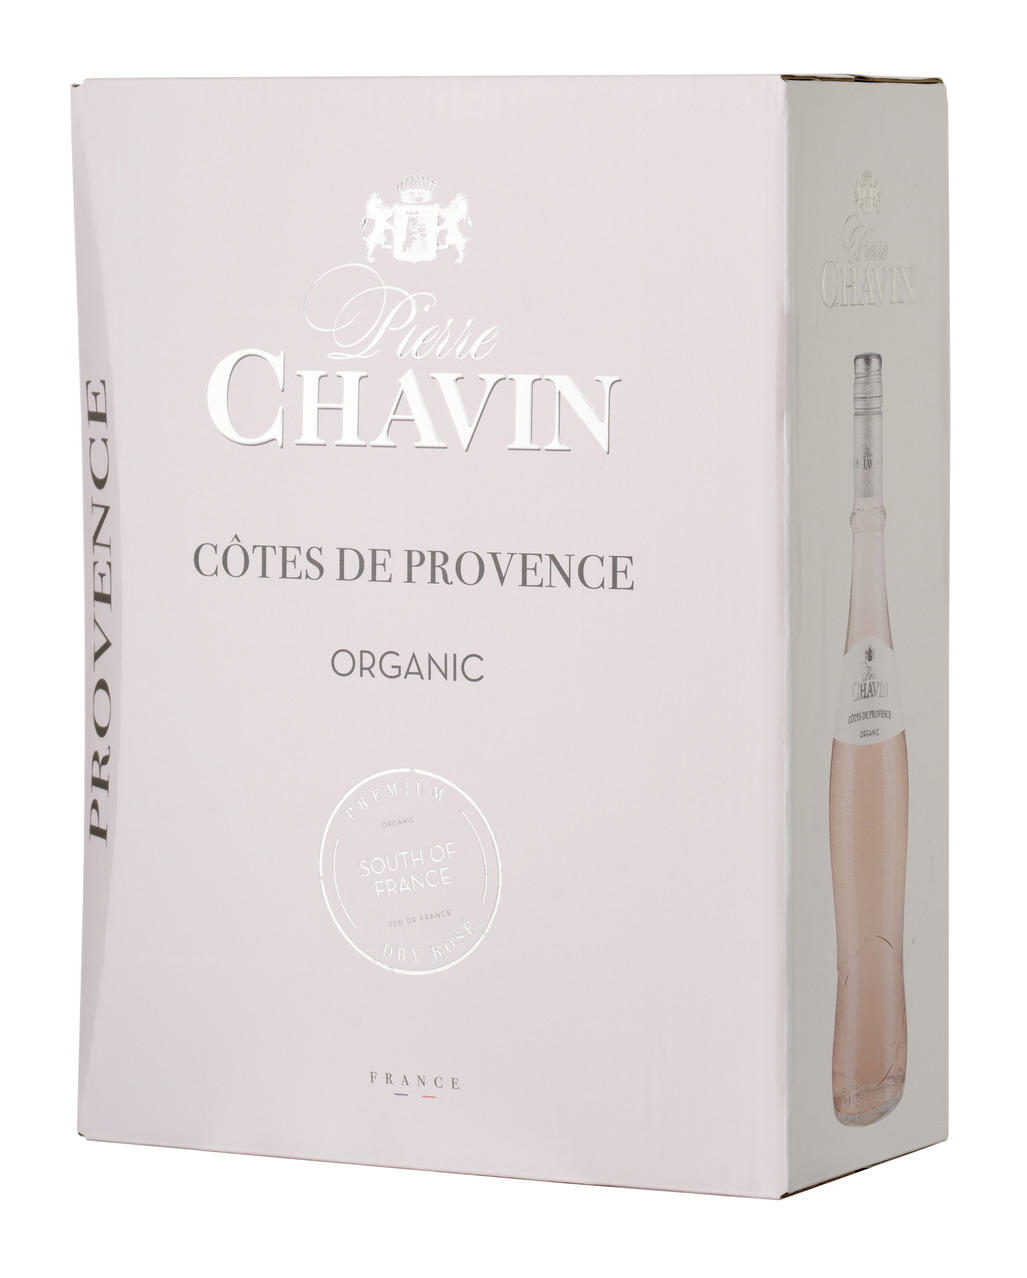 Pierre Chavin Côte de Provence Rosé